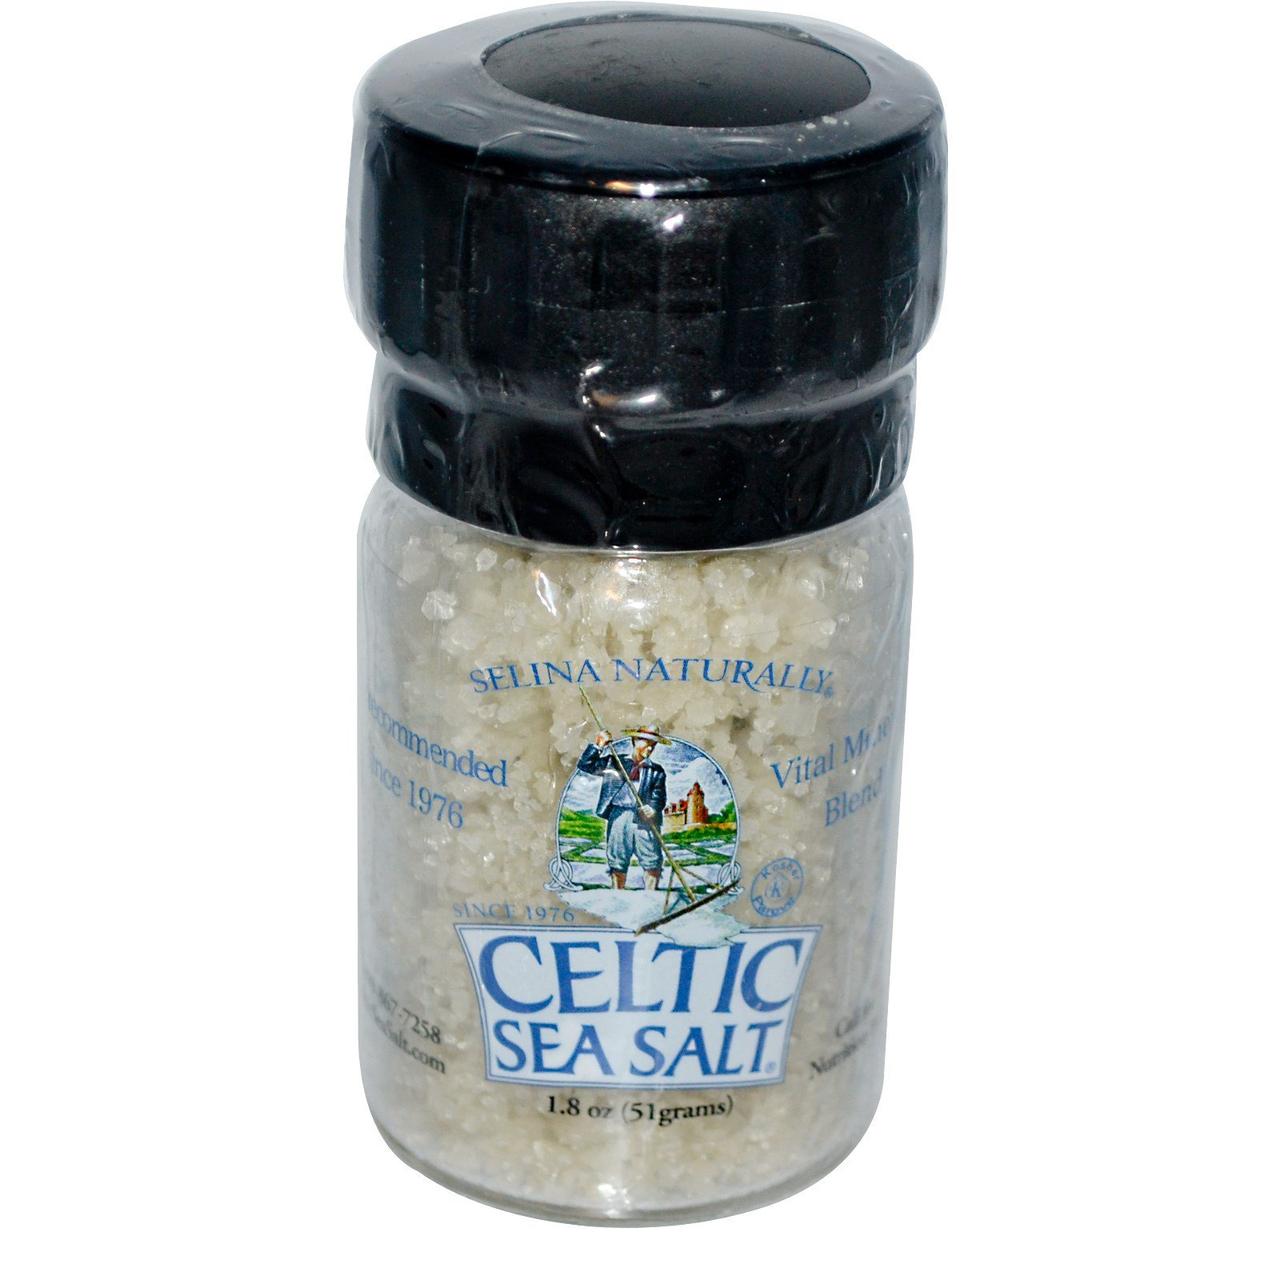 Celtic Sea Salt, Міні-млинок з сіллю, світло-сіра сіль Кельтського моря, 1,8 унції (51 м)